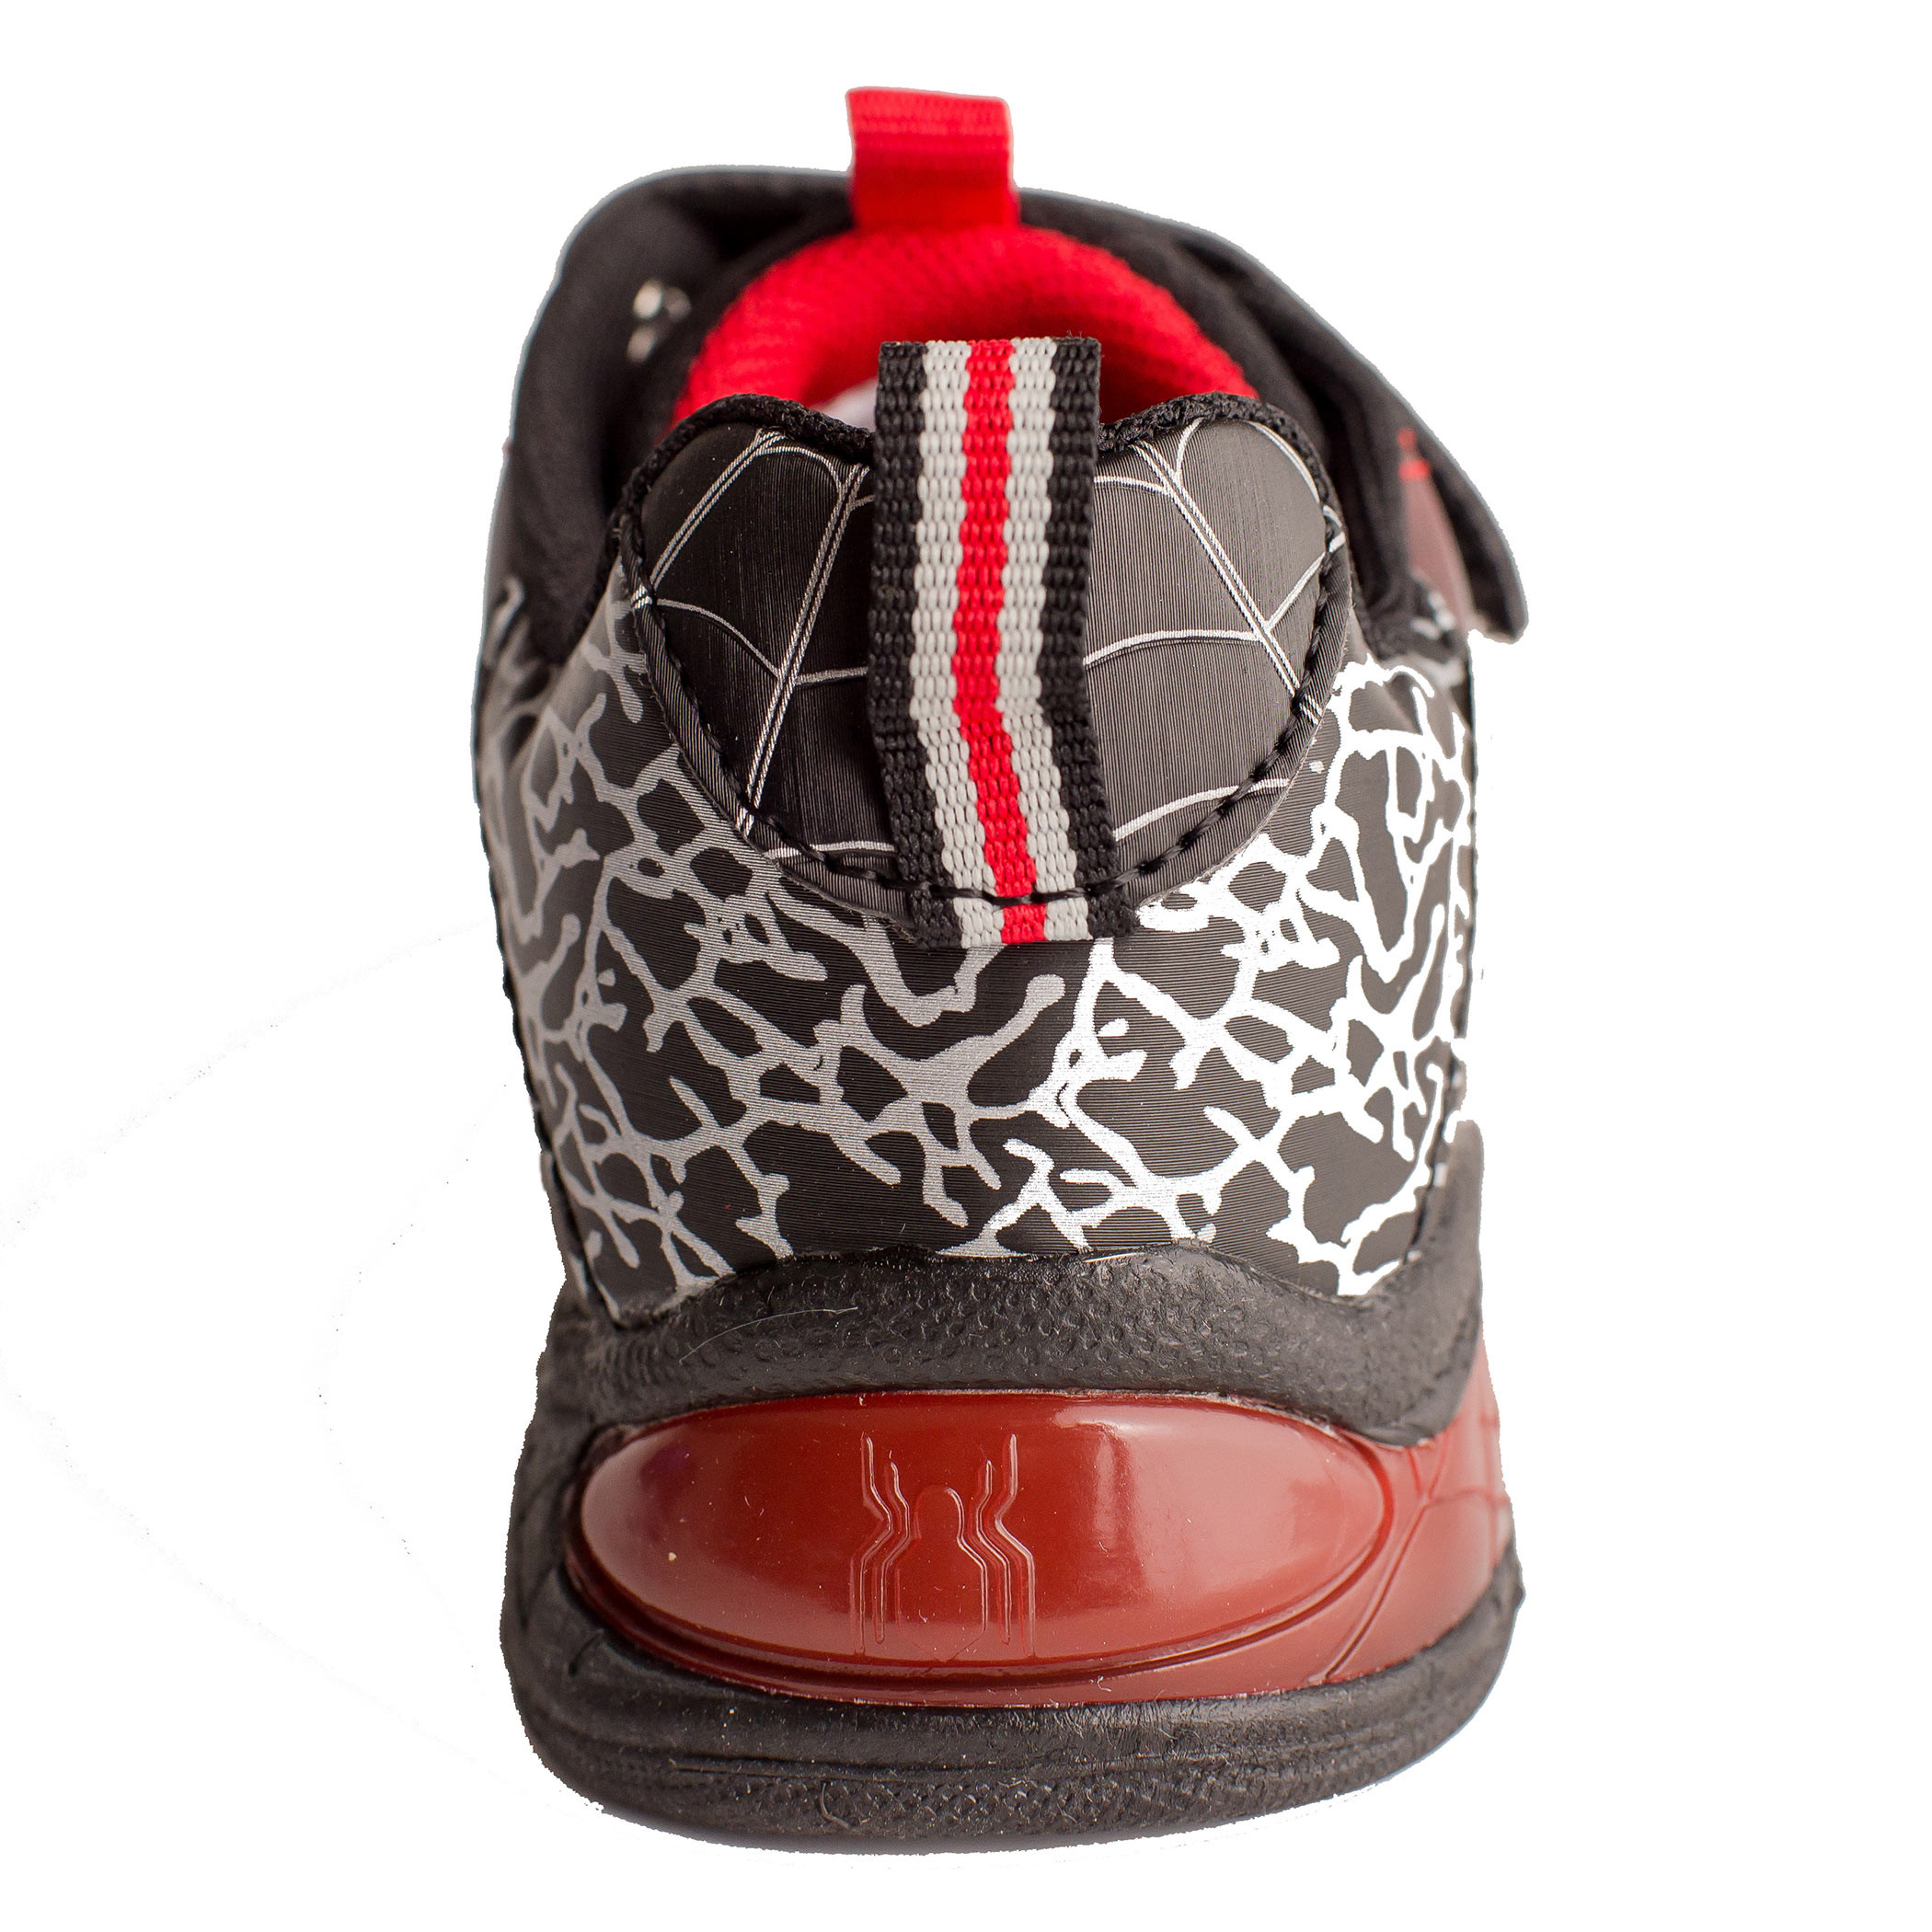 Spider-Man Kids Light Up Shoes